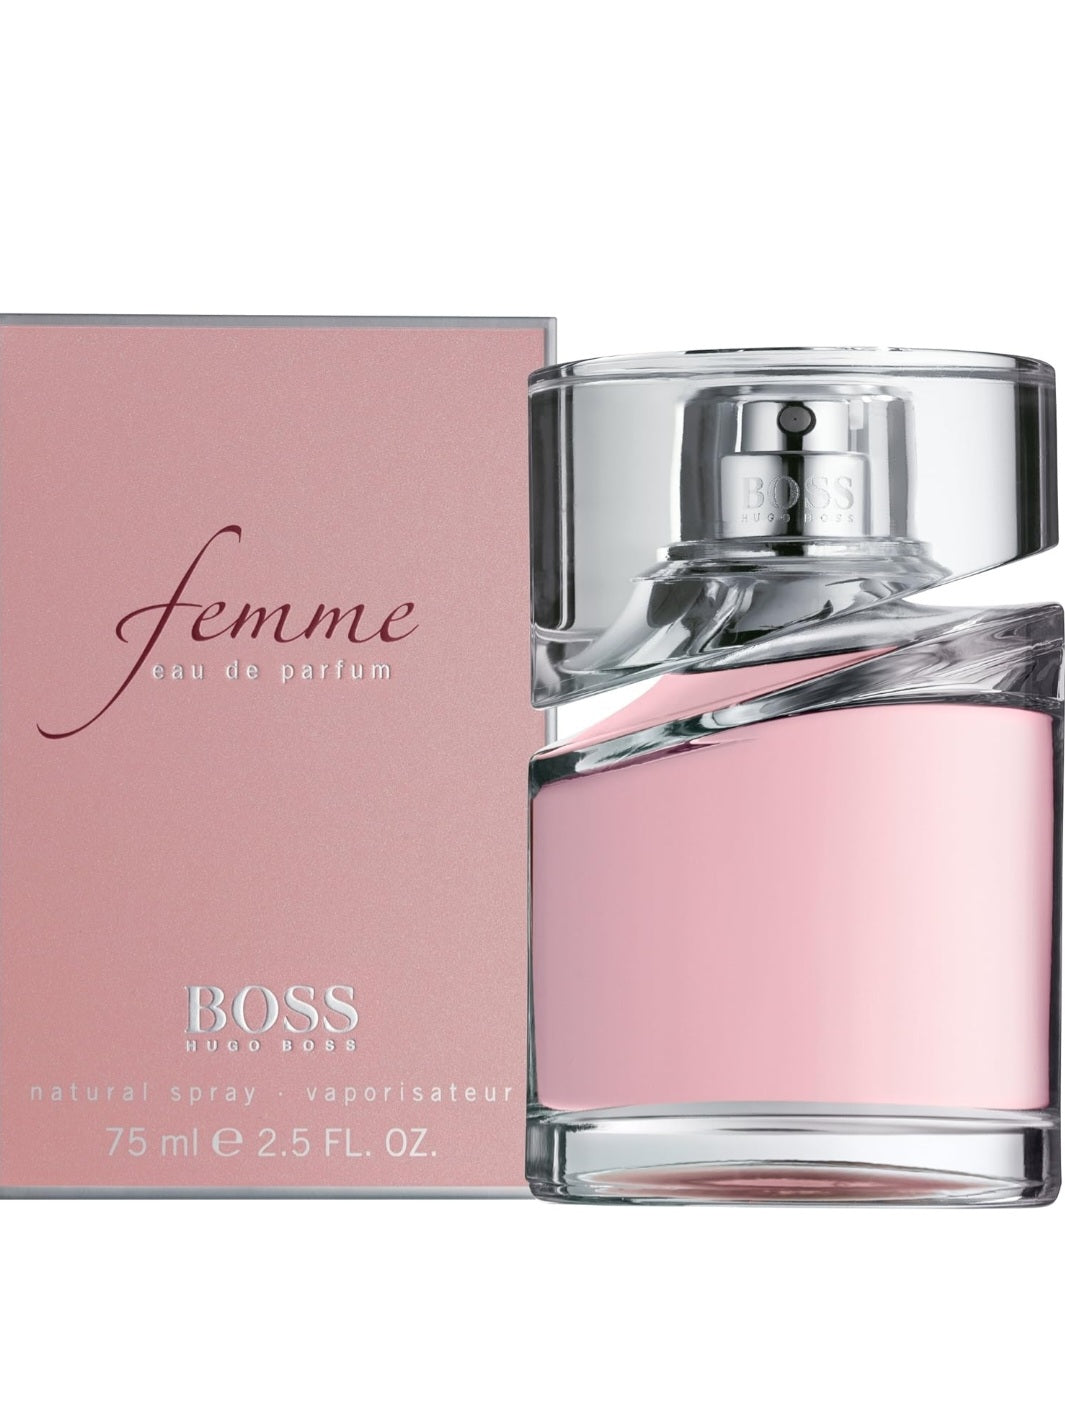 BOSS Femme Eau de Parfum 75Ml